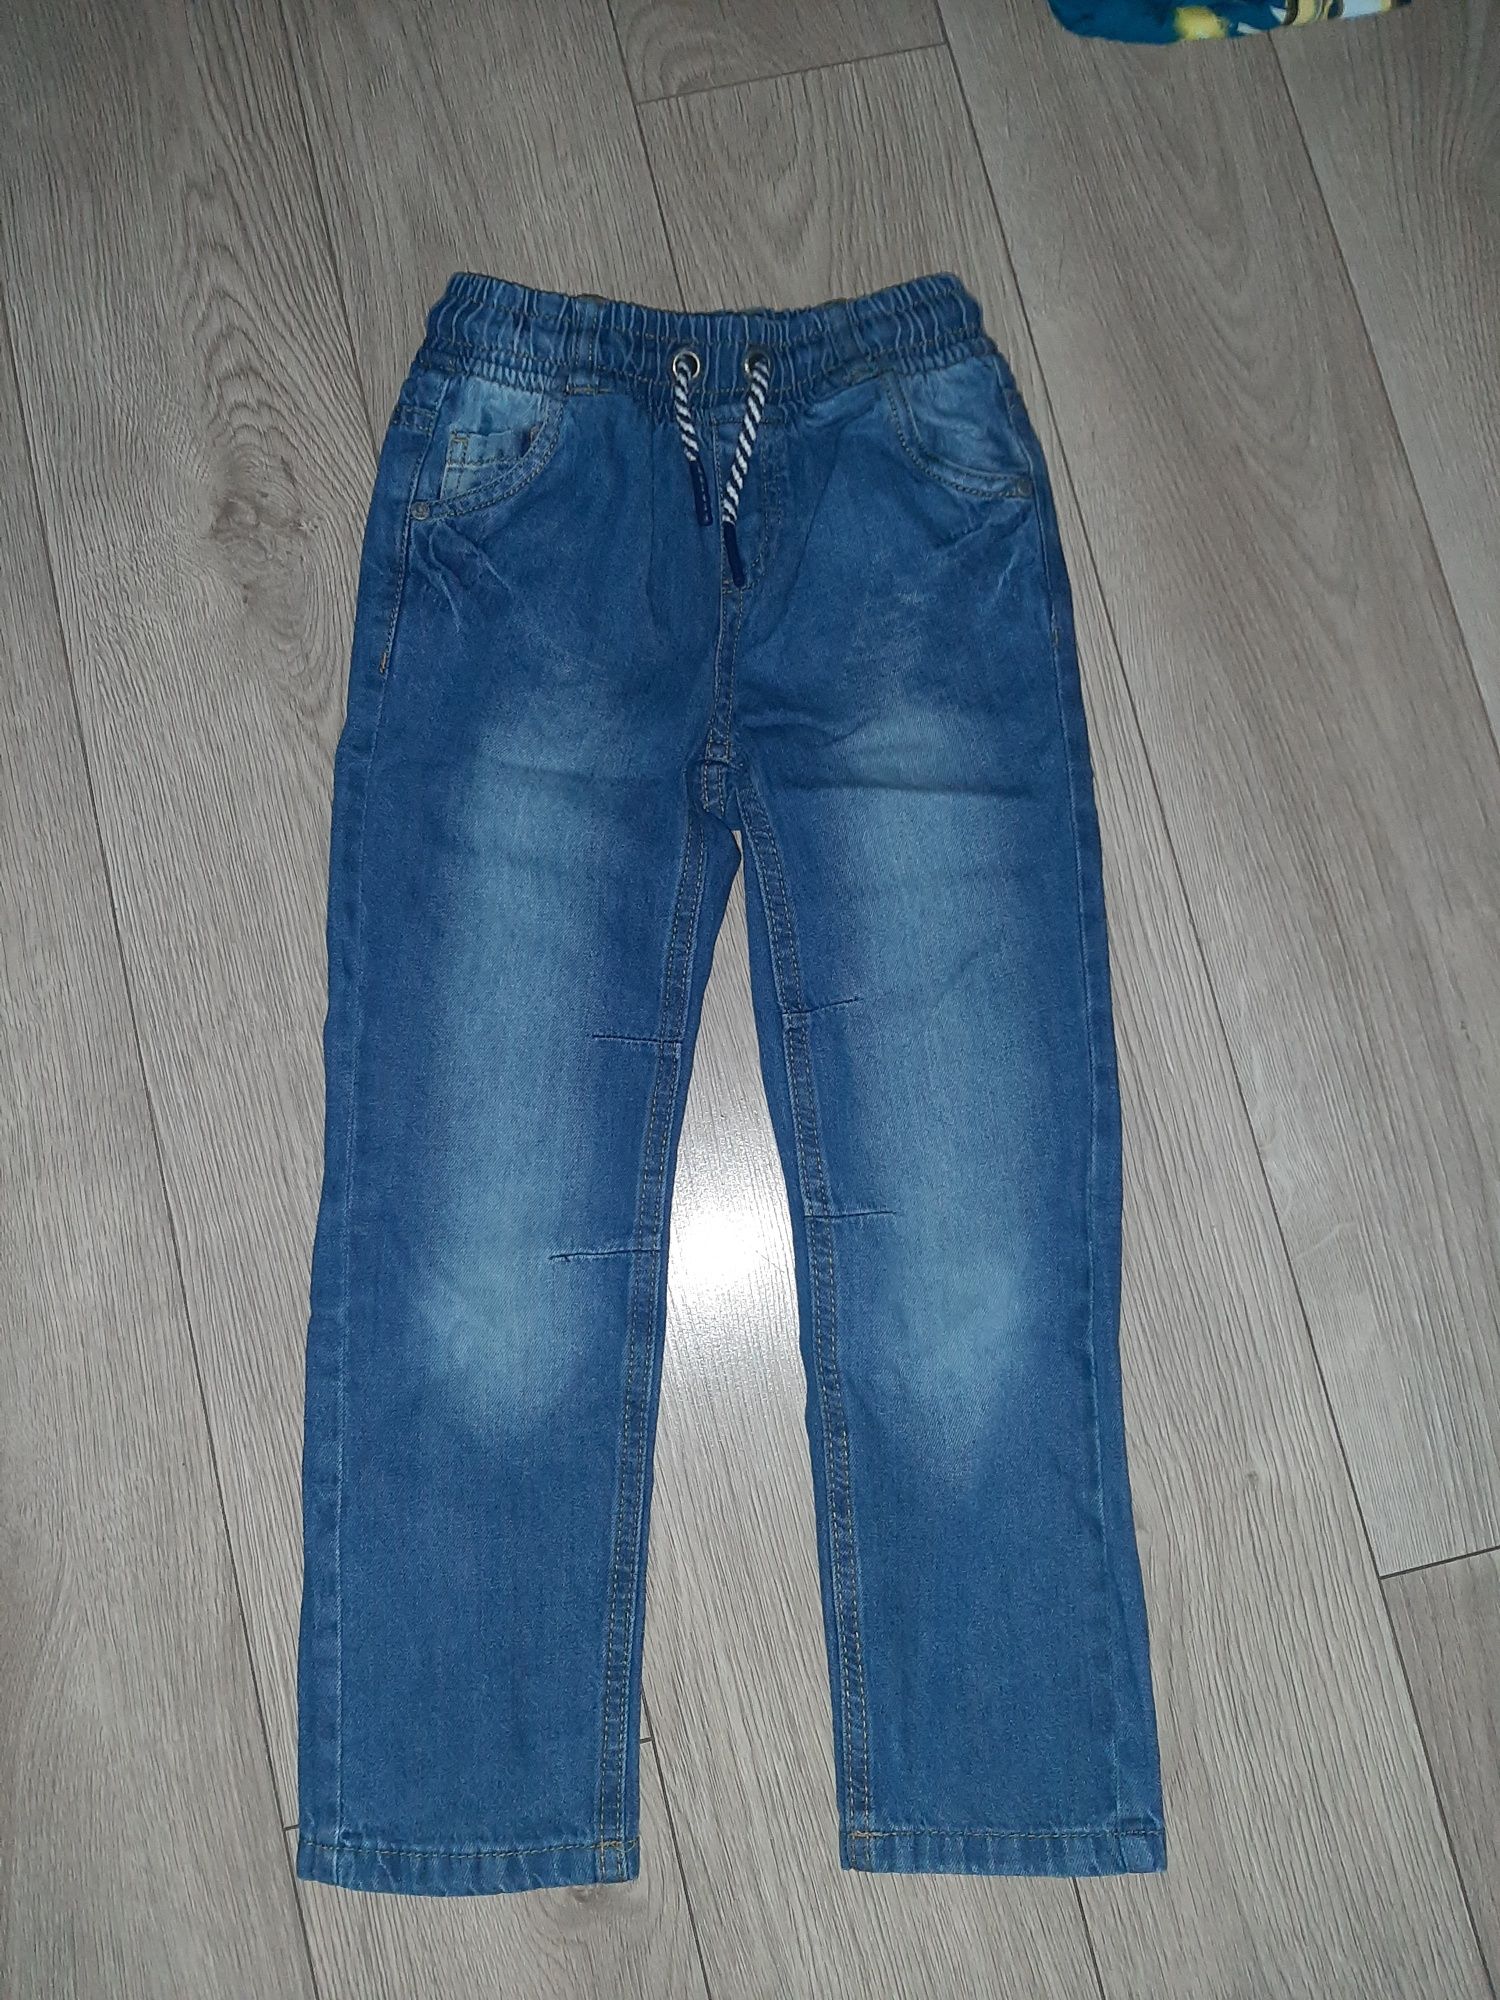 Spodnie chłopięce, jeansy  Smyk r 122)